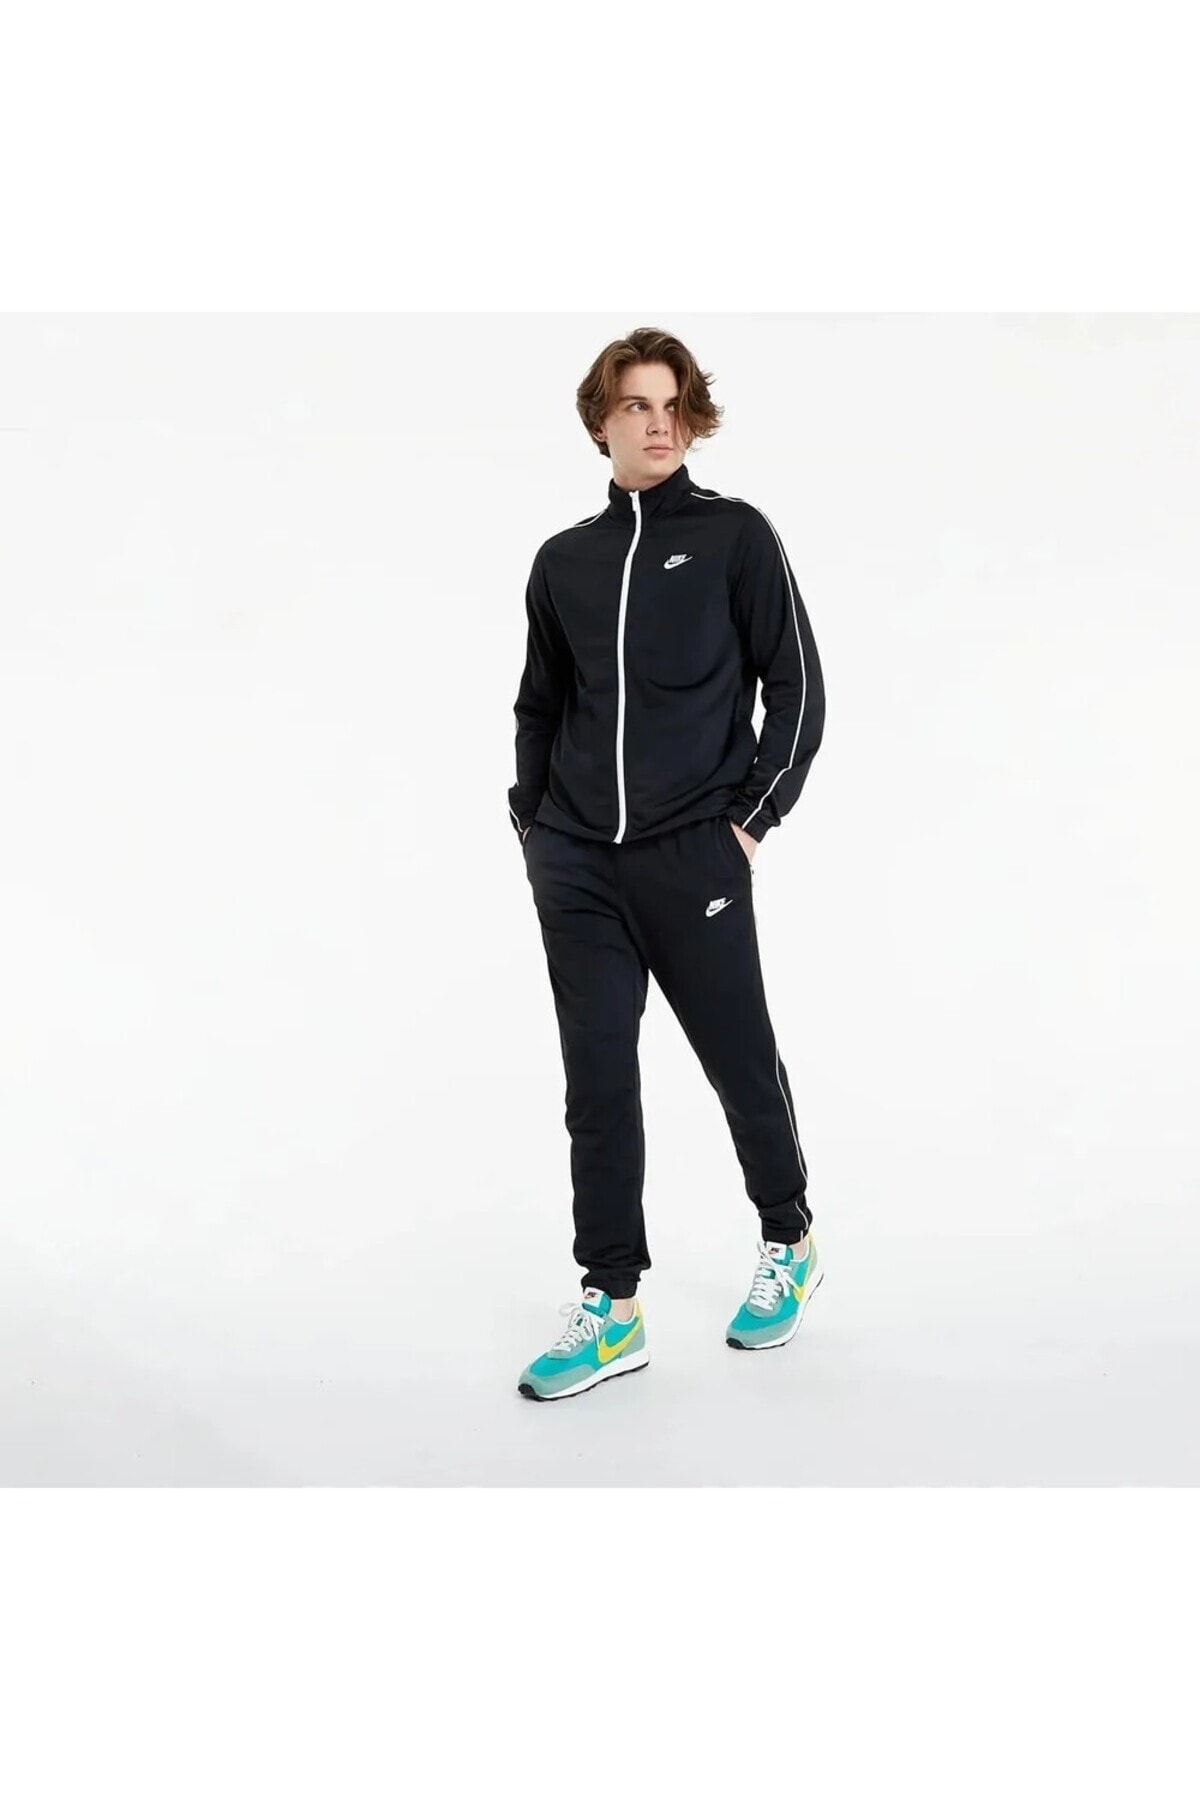 Nike Sportswear Black Men's Tracksuit Set DN4369-010